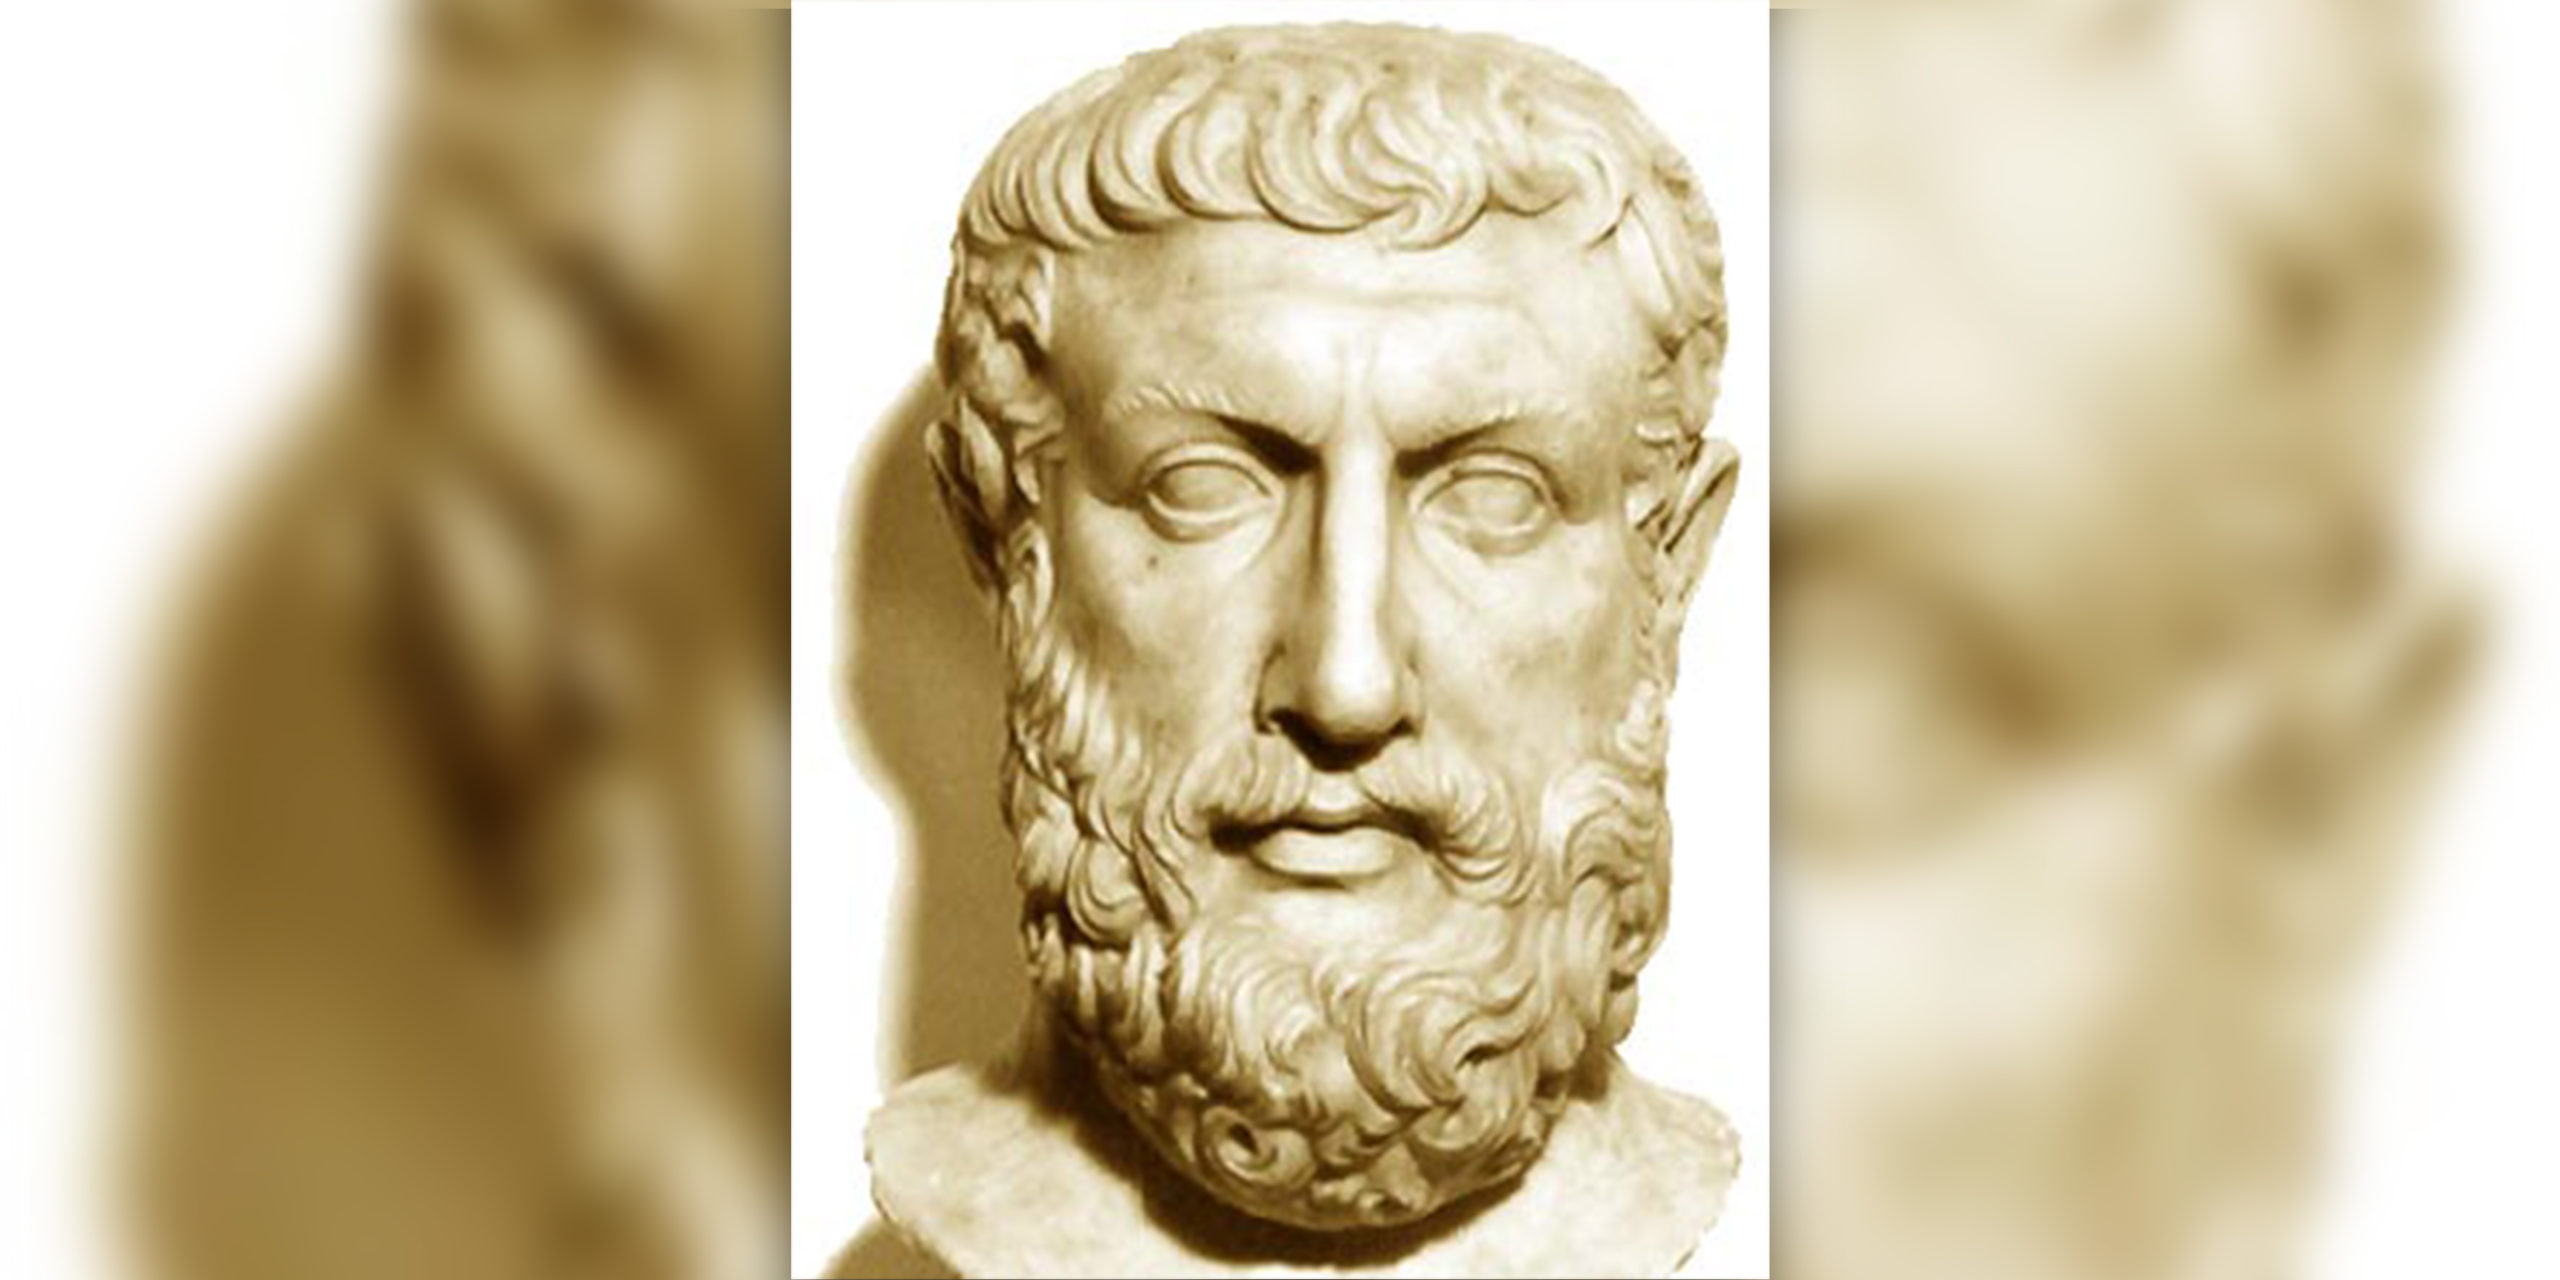  120 filósofos: Parménides de Elea